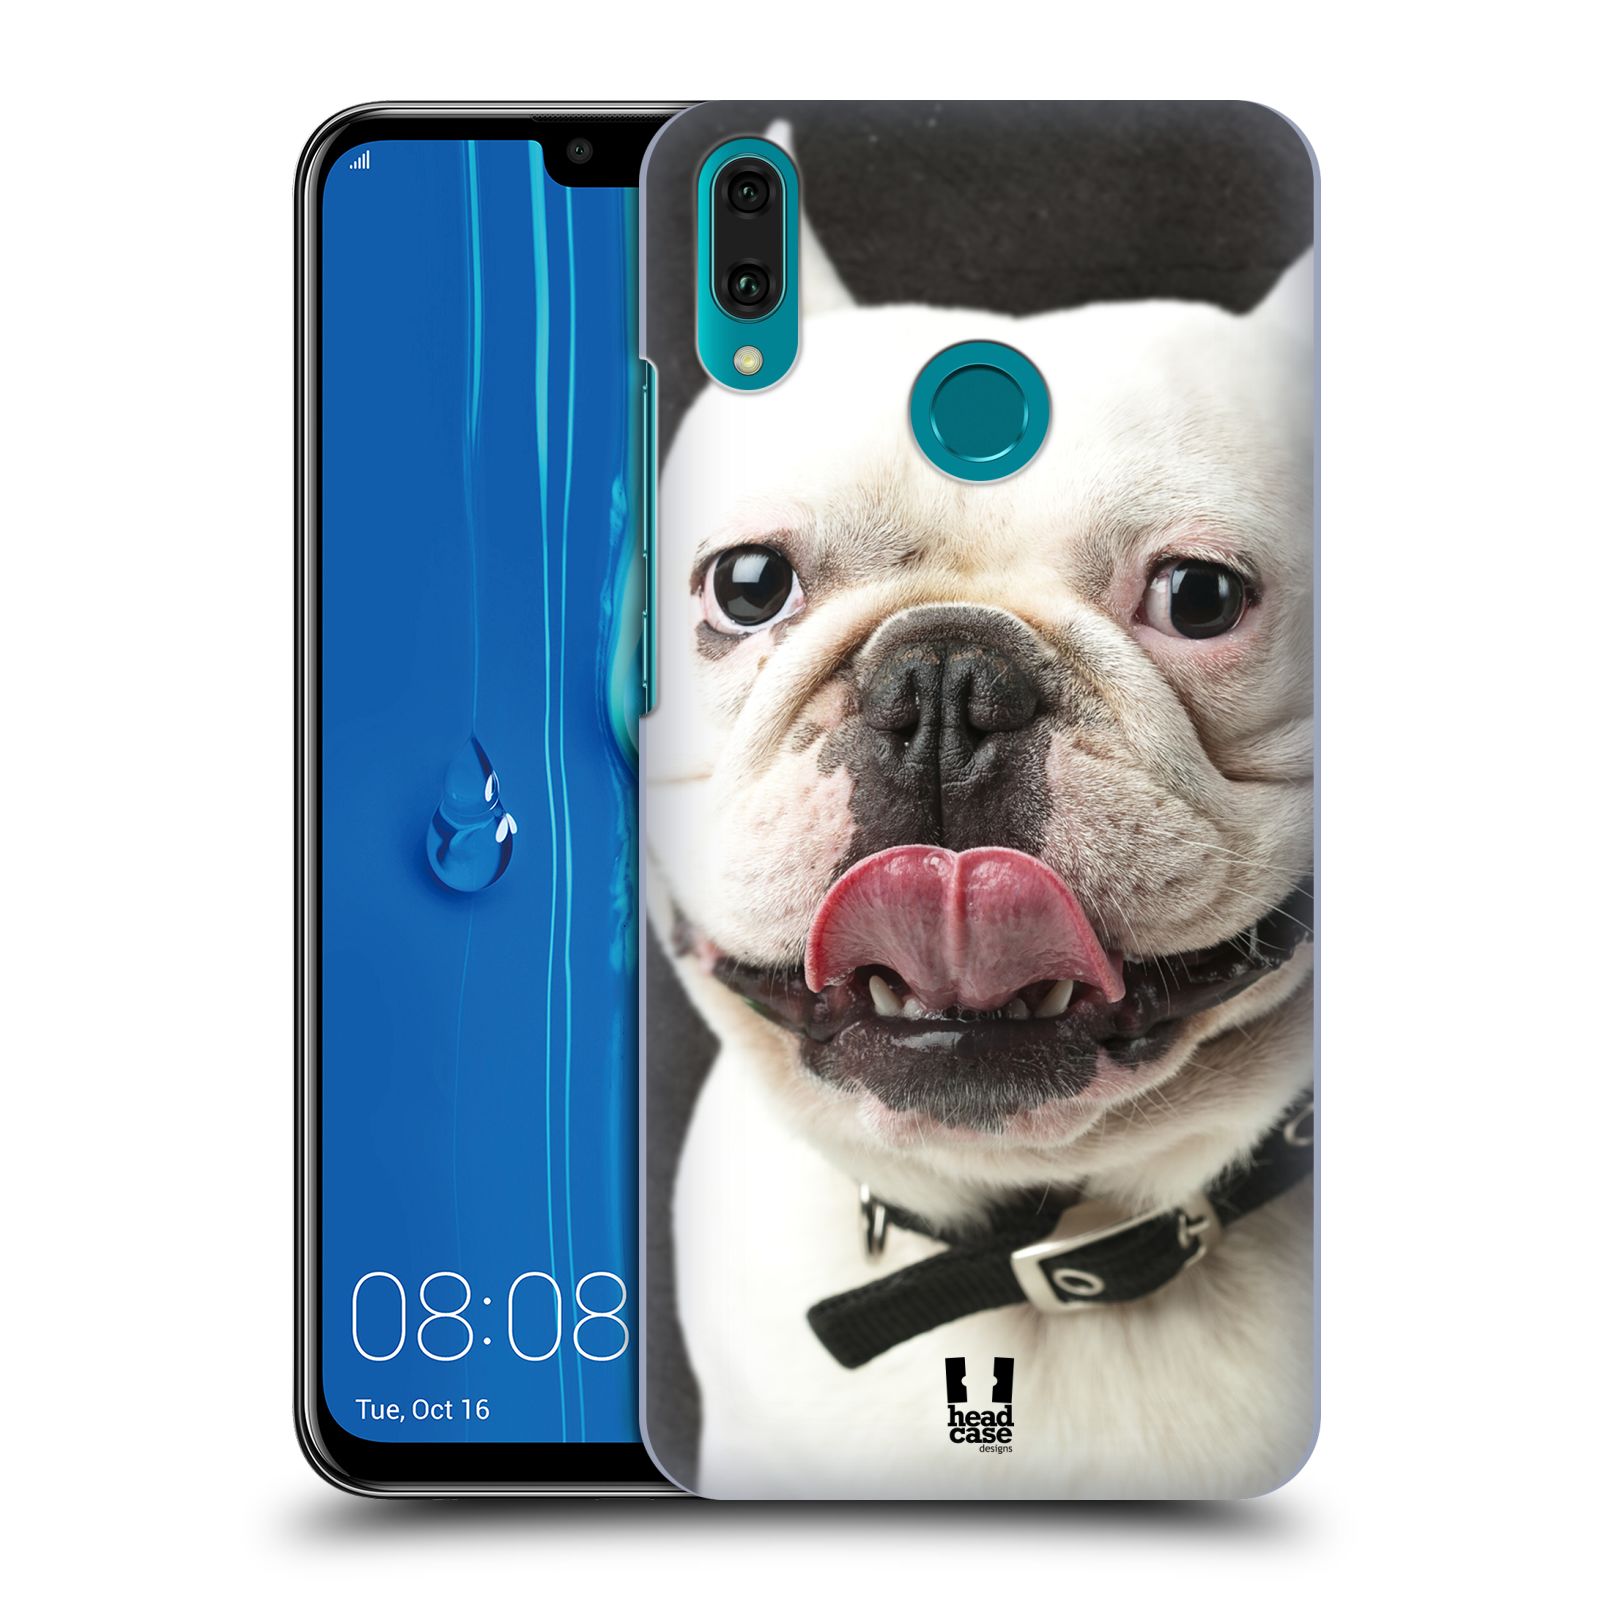 Pouzdro na mobil Huawei Y9 2019 - HEAD CASE - vzor Legrační zvířátka pejsek s vyplazeným jazykem BULDOK